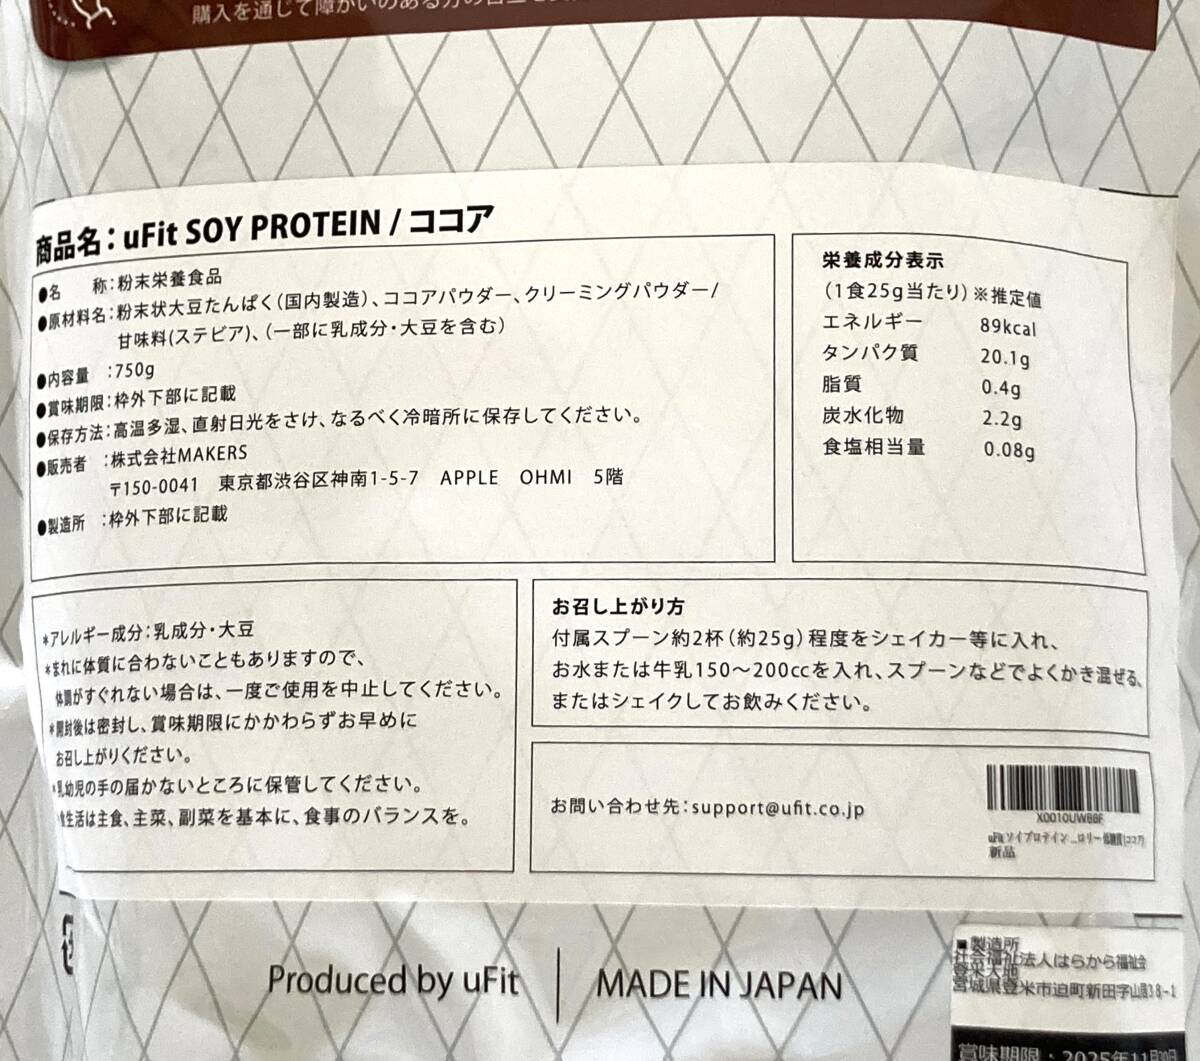 ☆未開封未使用☆ uFit ソイプロテイン 日本国内製造 ココア 750g プロテイン 賞味期限 2025年11月 ２個セット 無添加 大豆たんぱく 美容_画像4